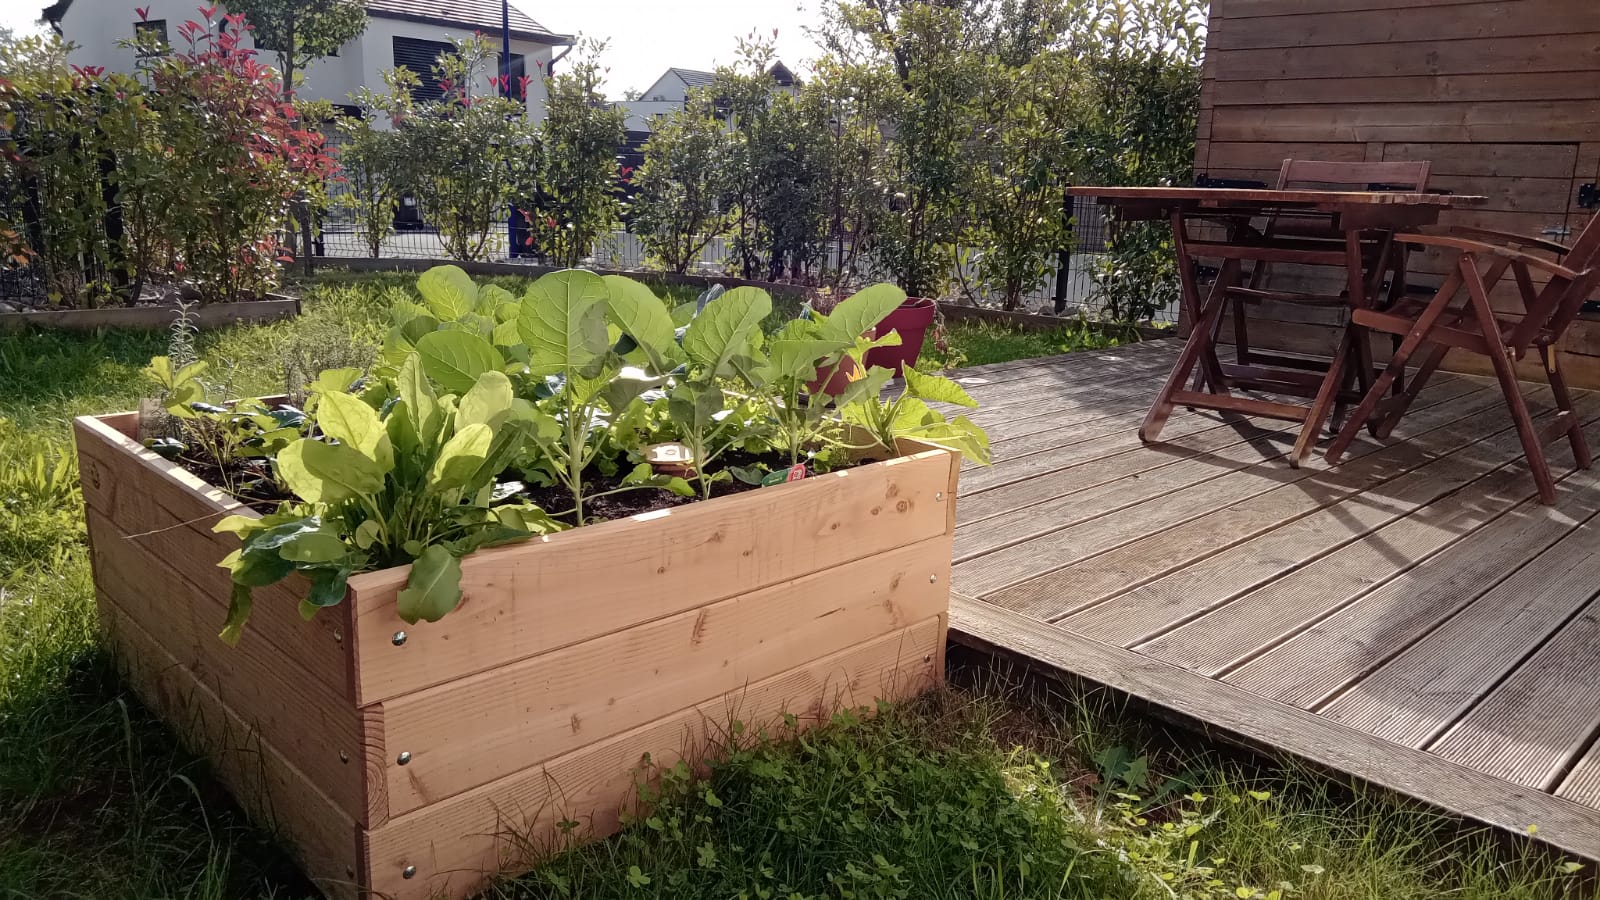 Agrotonome : ce potager composteur (terrasse et jardin) permet de